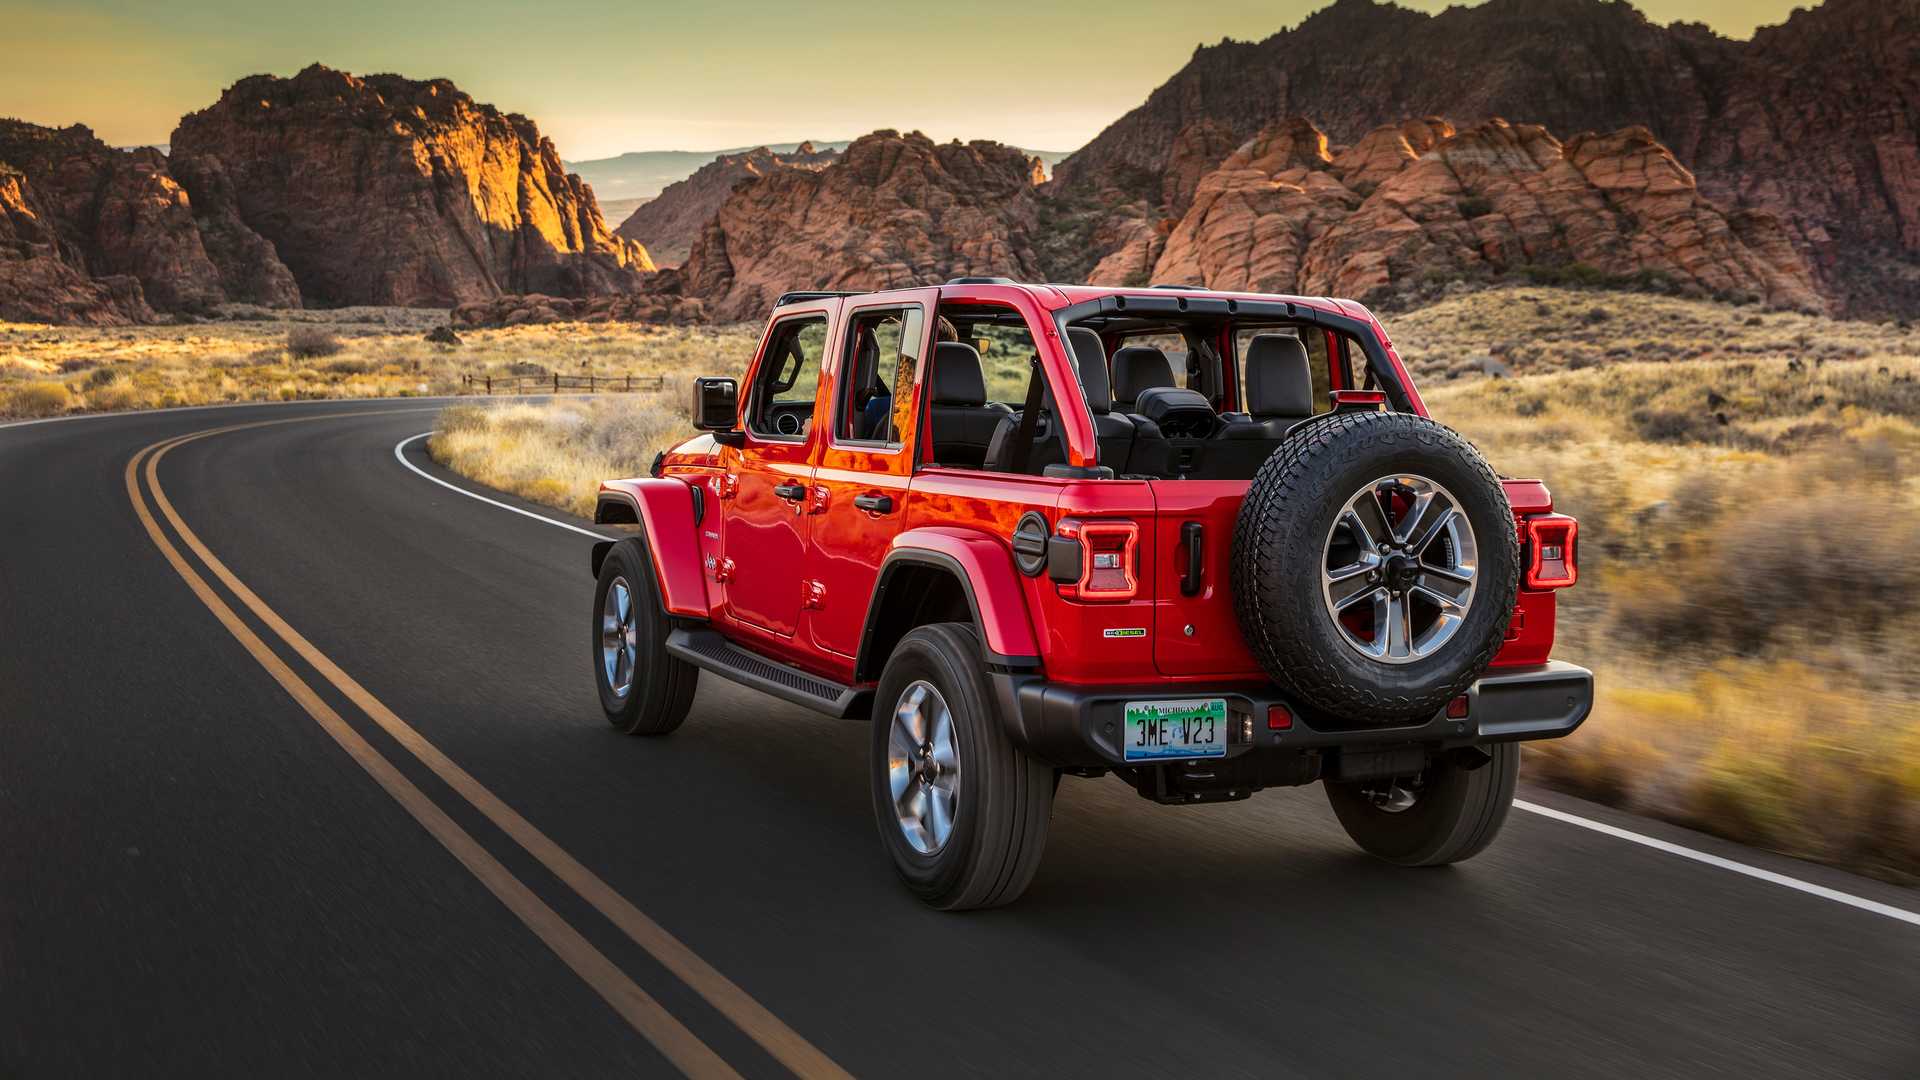 传闻jeep牧马人今年将取消柴油发动机,并推出一款farout特别版